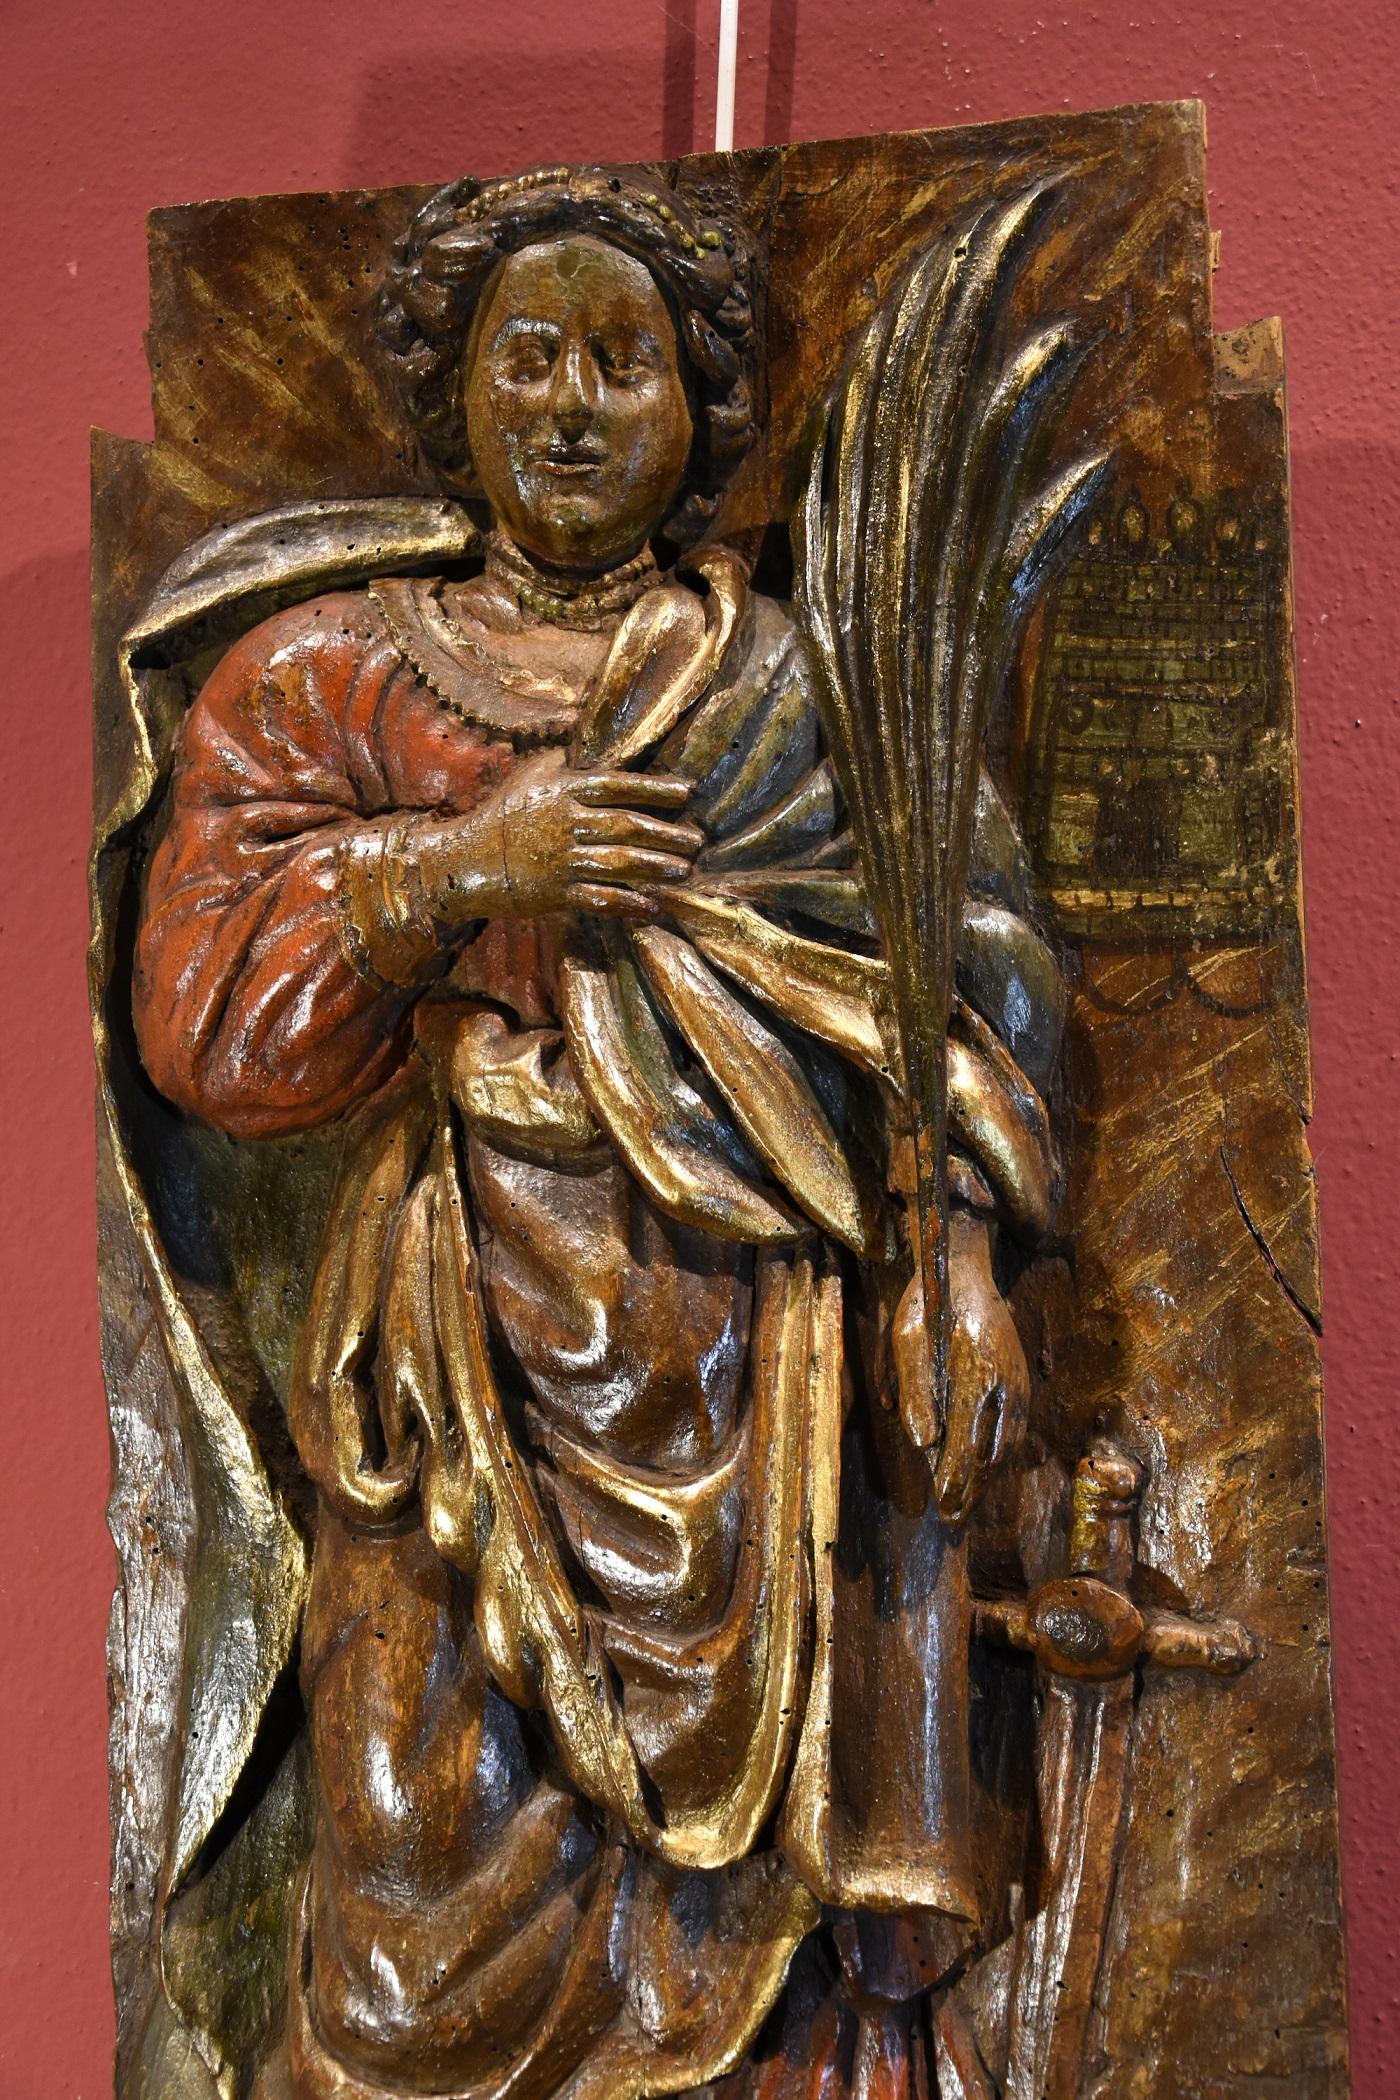 16th century sculpture